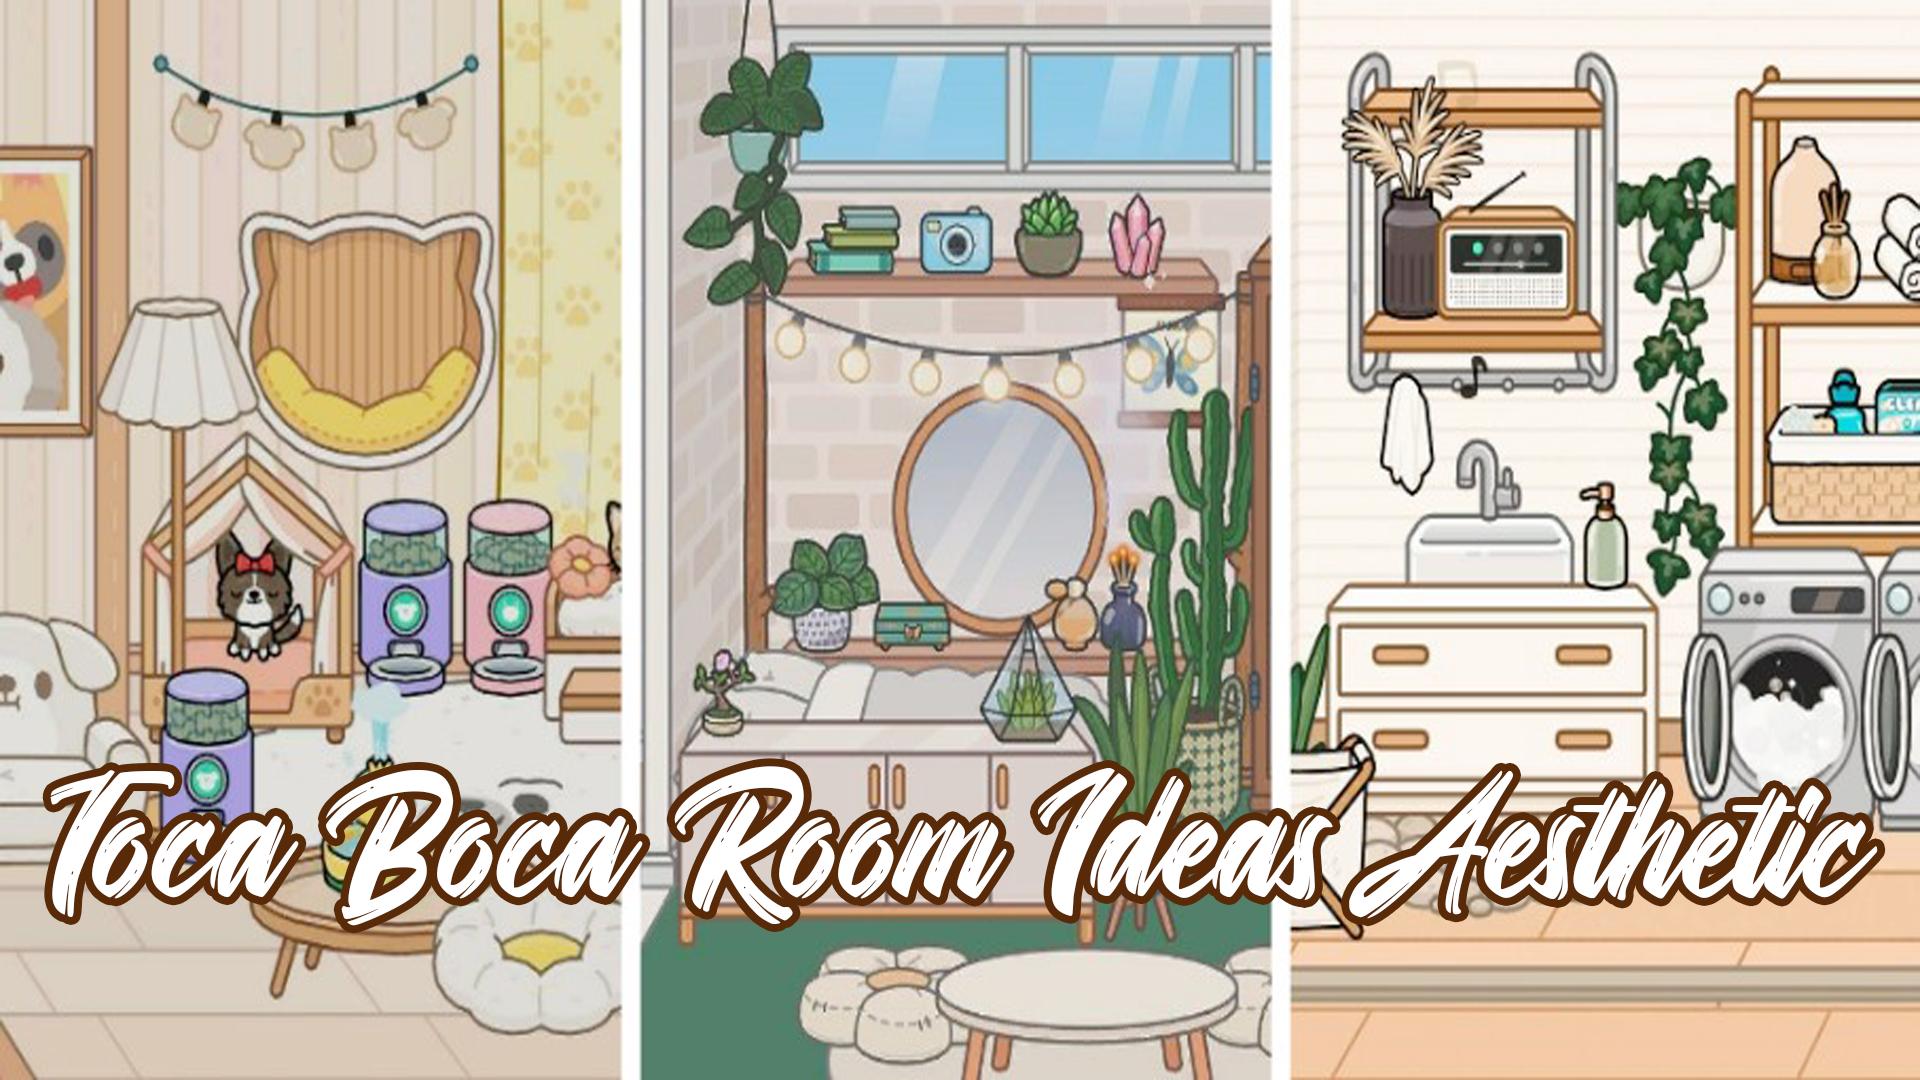 Free Bedroom idea Toca Boca, toca boca kitchen idea